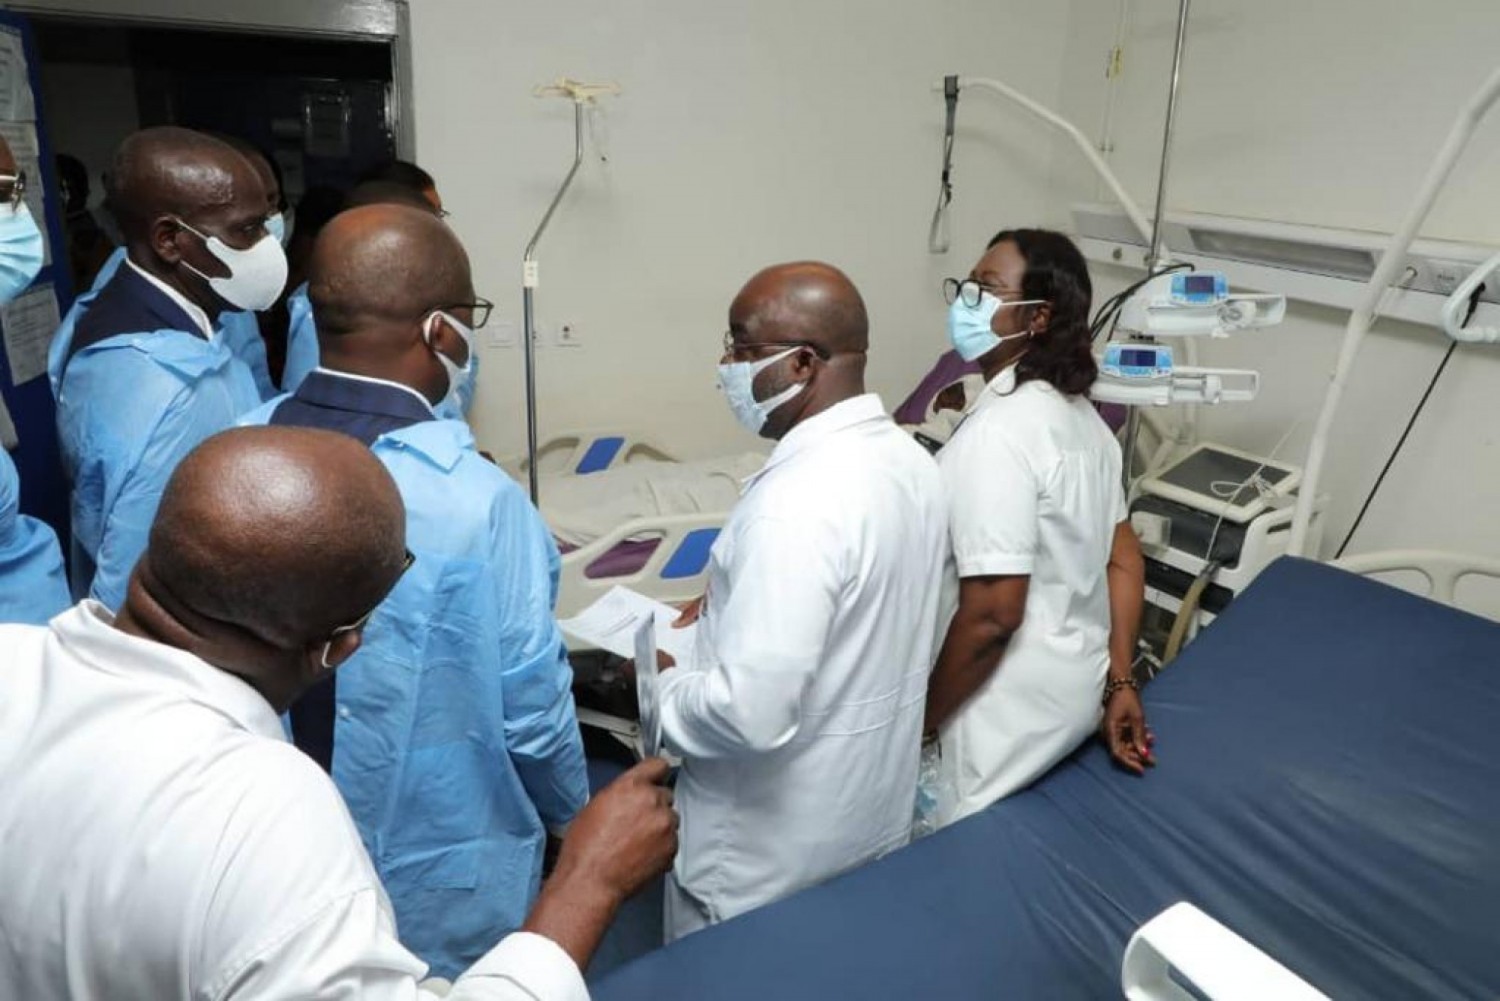 Côte d'Ivoire :    Prise en charge des accidentés de Yamoussoukro, Pierre Dimba se félicite du bon fonctionnement du pôle sanitaire du bélier qui a pu contenir les blessés et éviter le pire